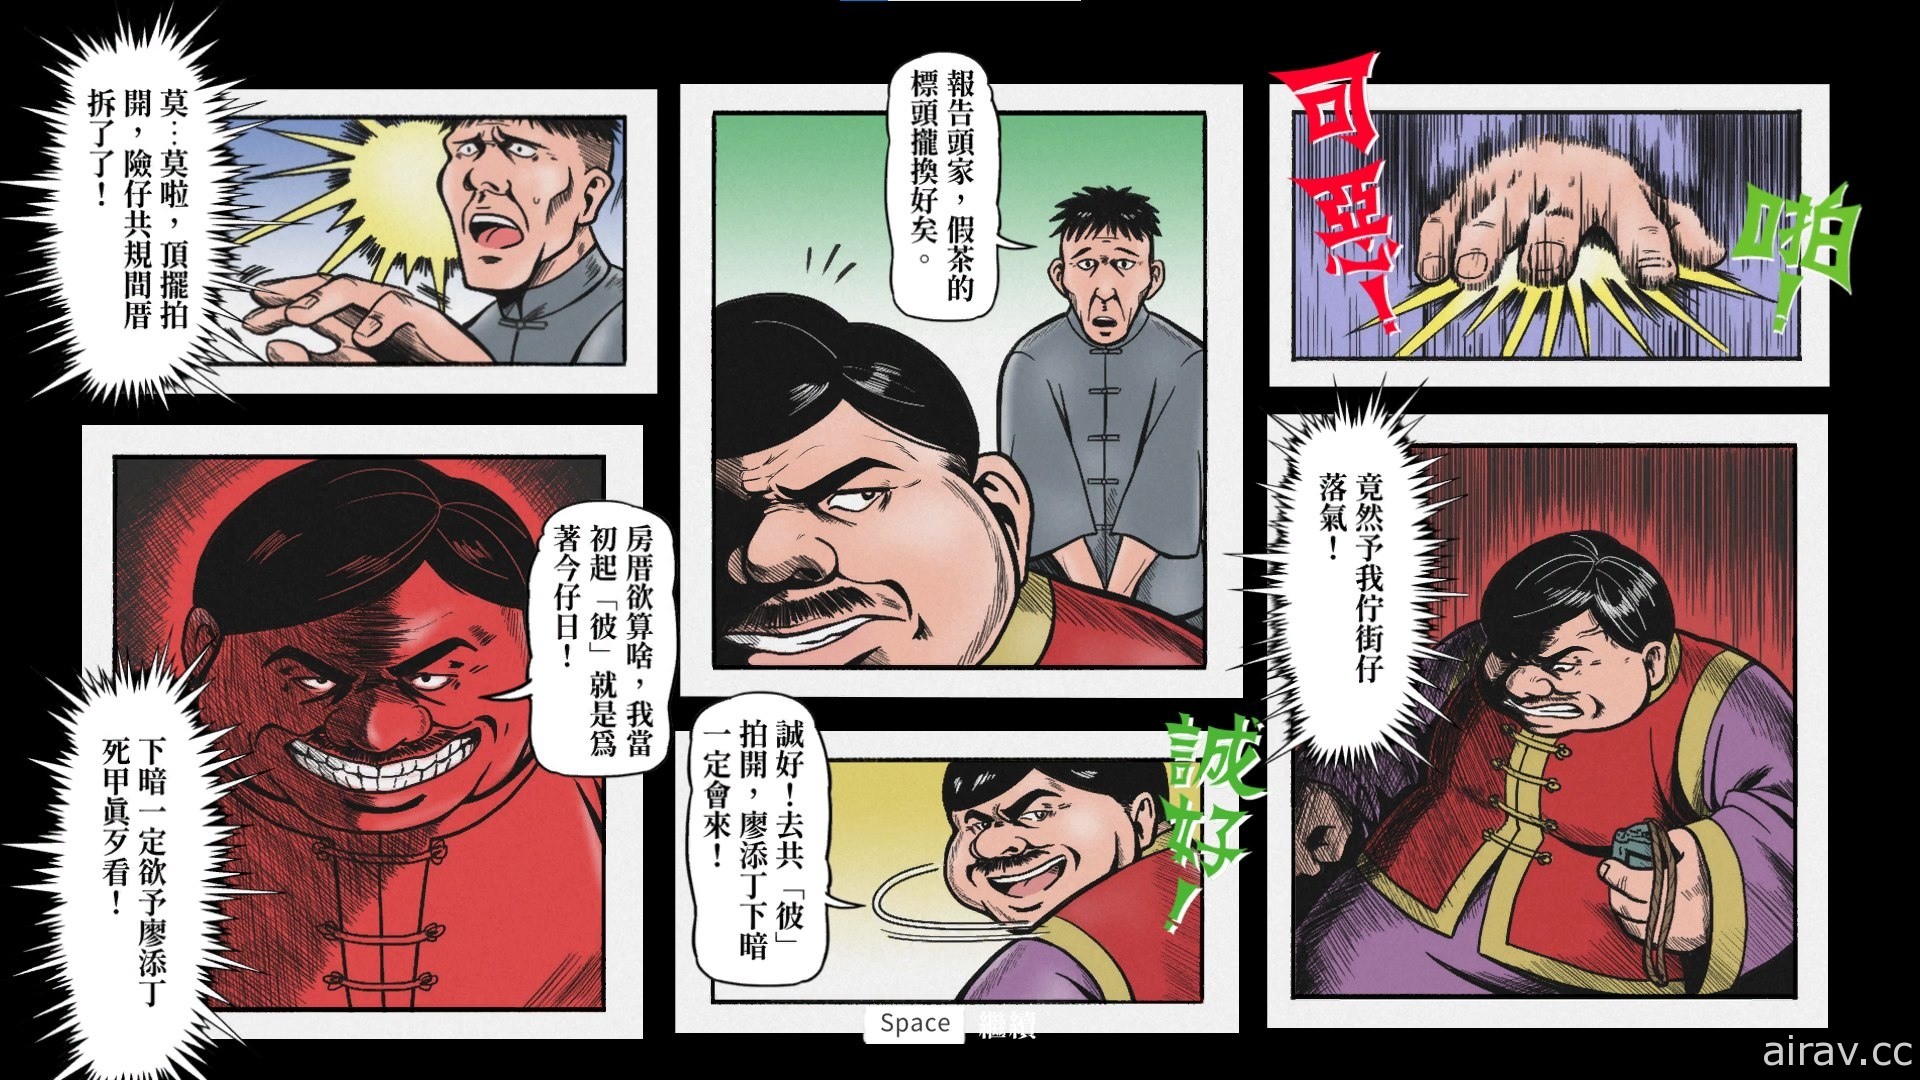 《廖添丁 - 稀代凶贼之最期》发售日延至 11 月初 游戏语言支援“台文”